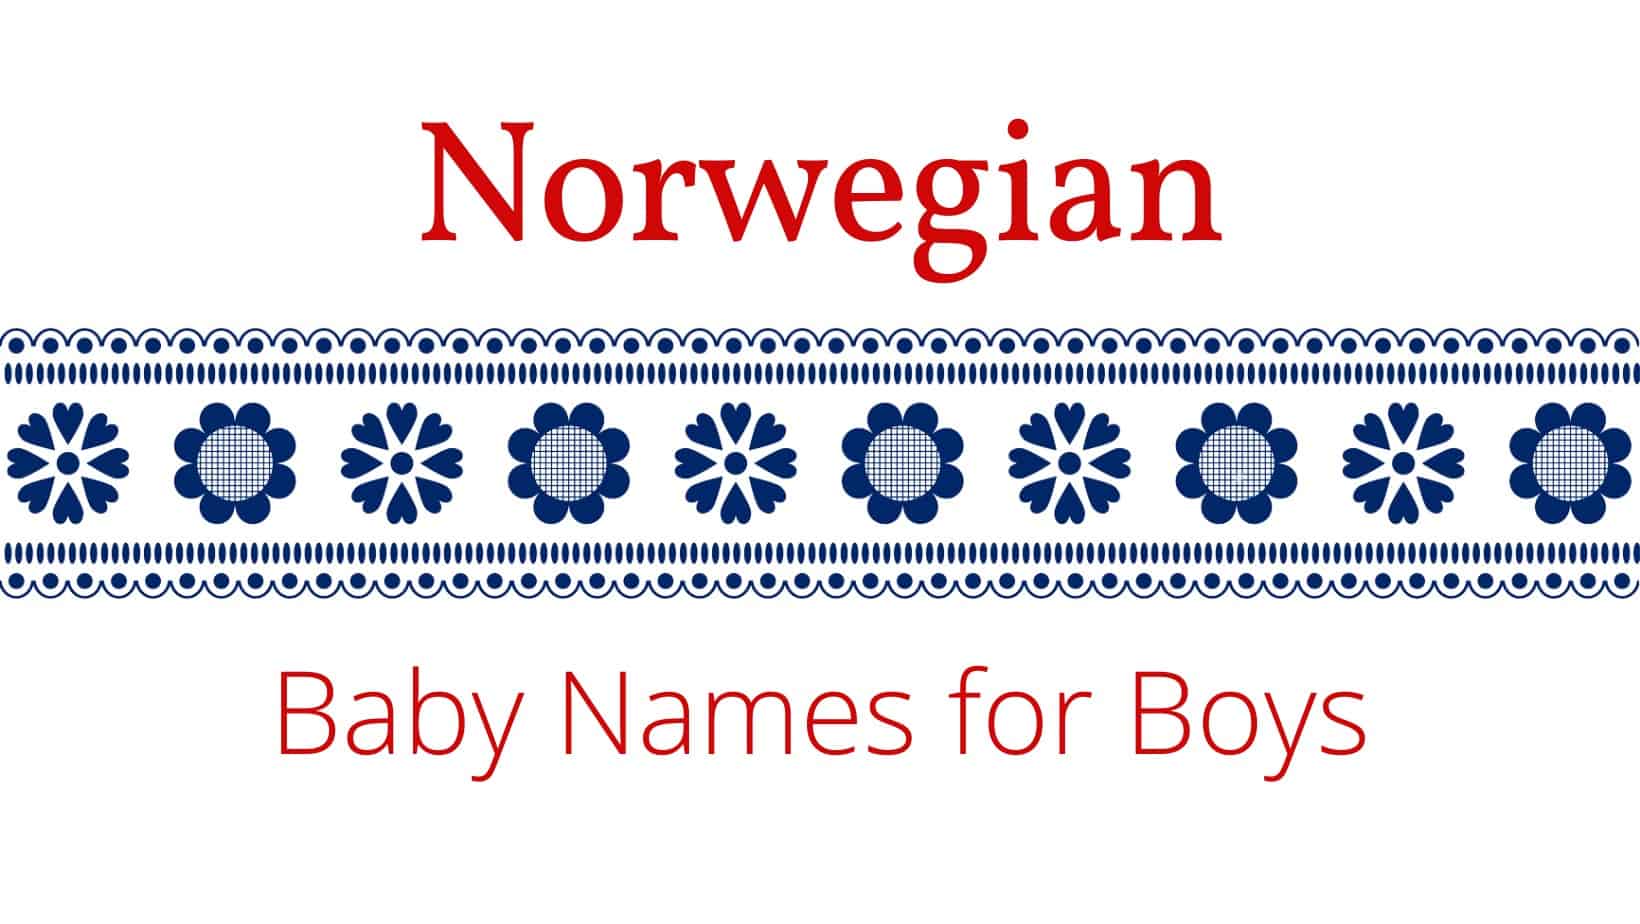 Norwegian baby names for boys